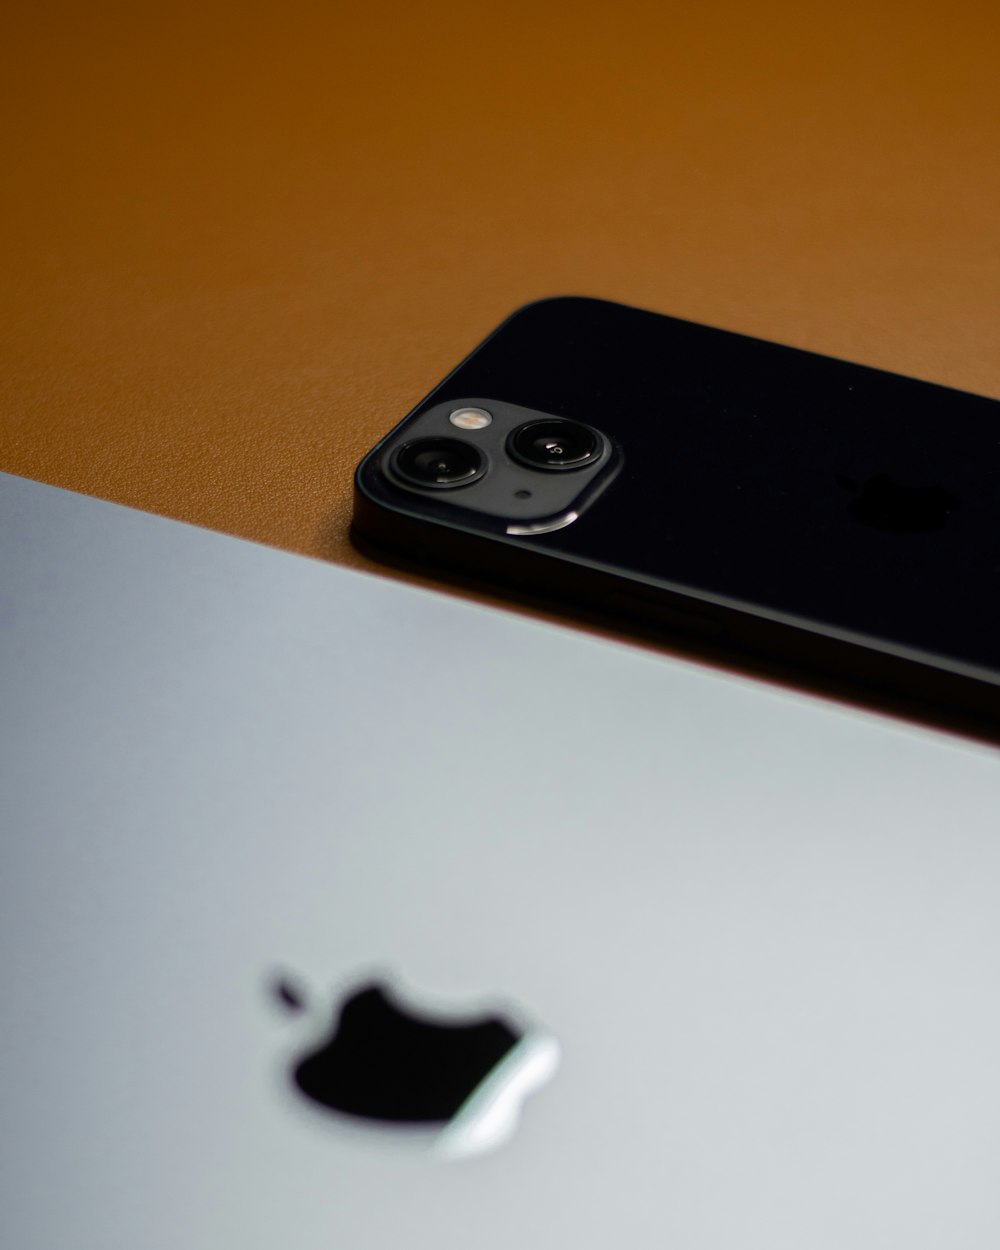 um close up de um iphone em uma mesa